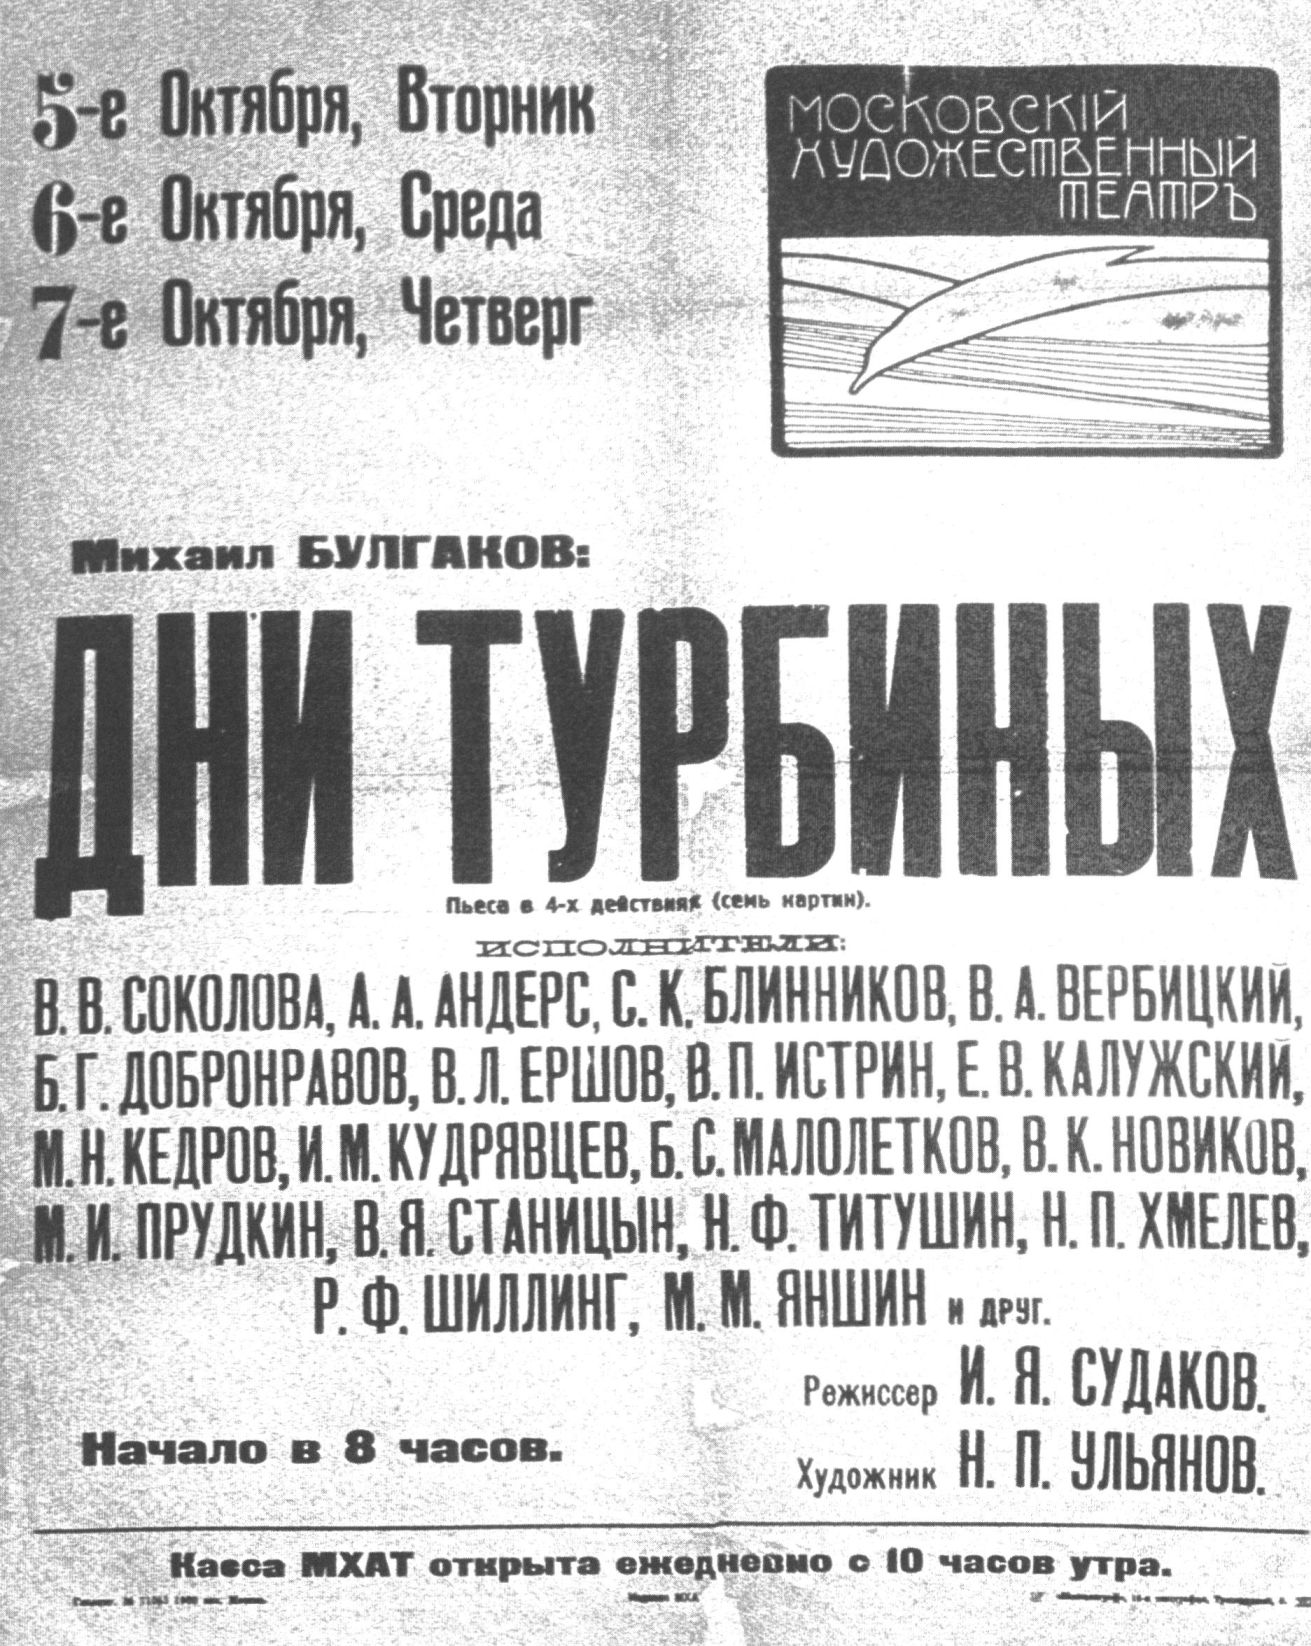 Афиша премьеры пьесы М. Булгакова «Дни Турбиных». 1926 г.